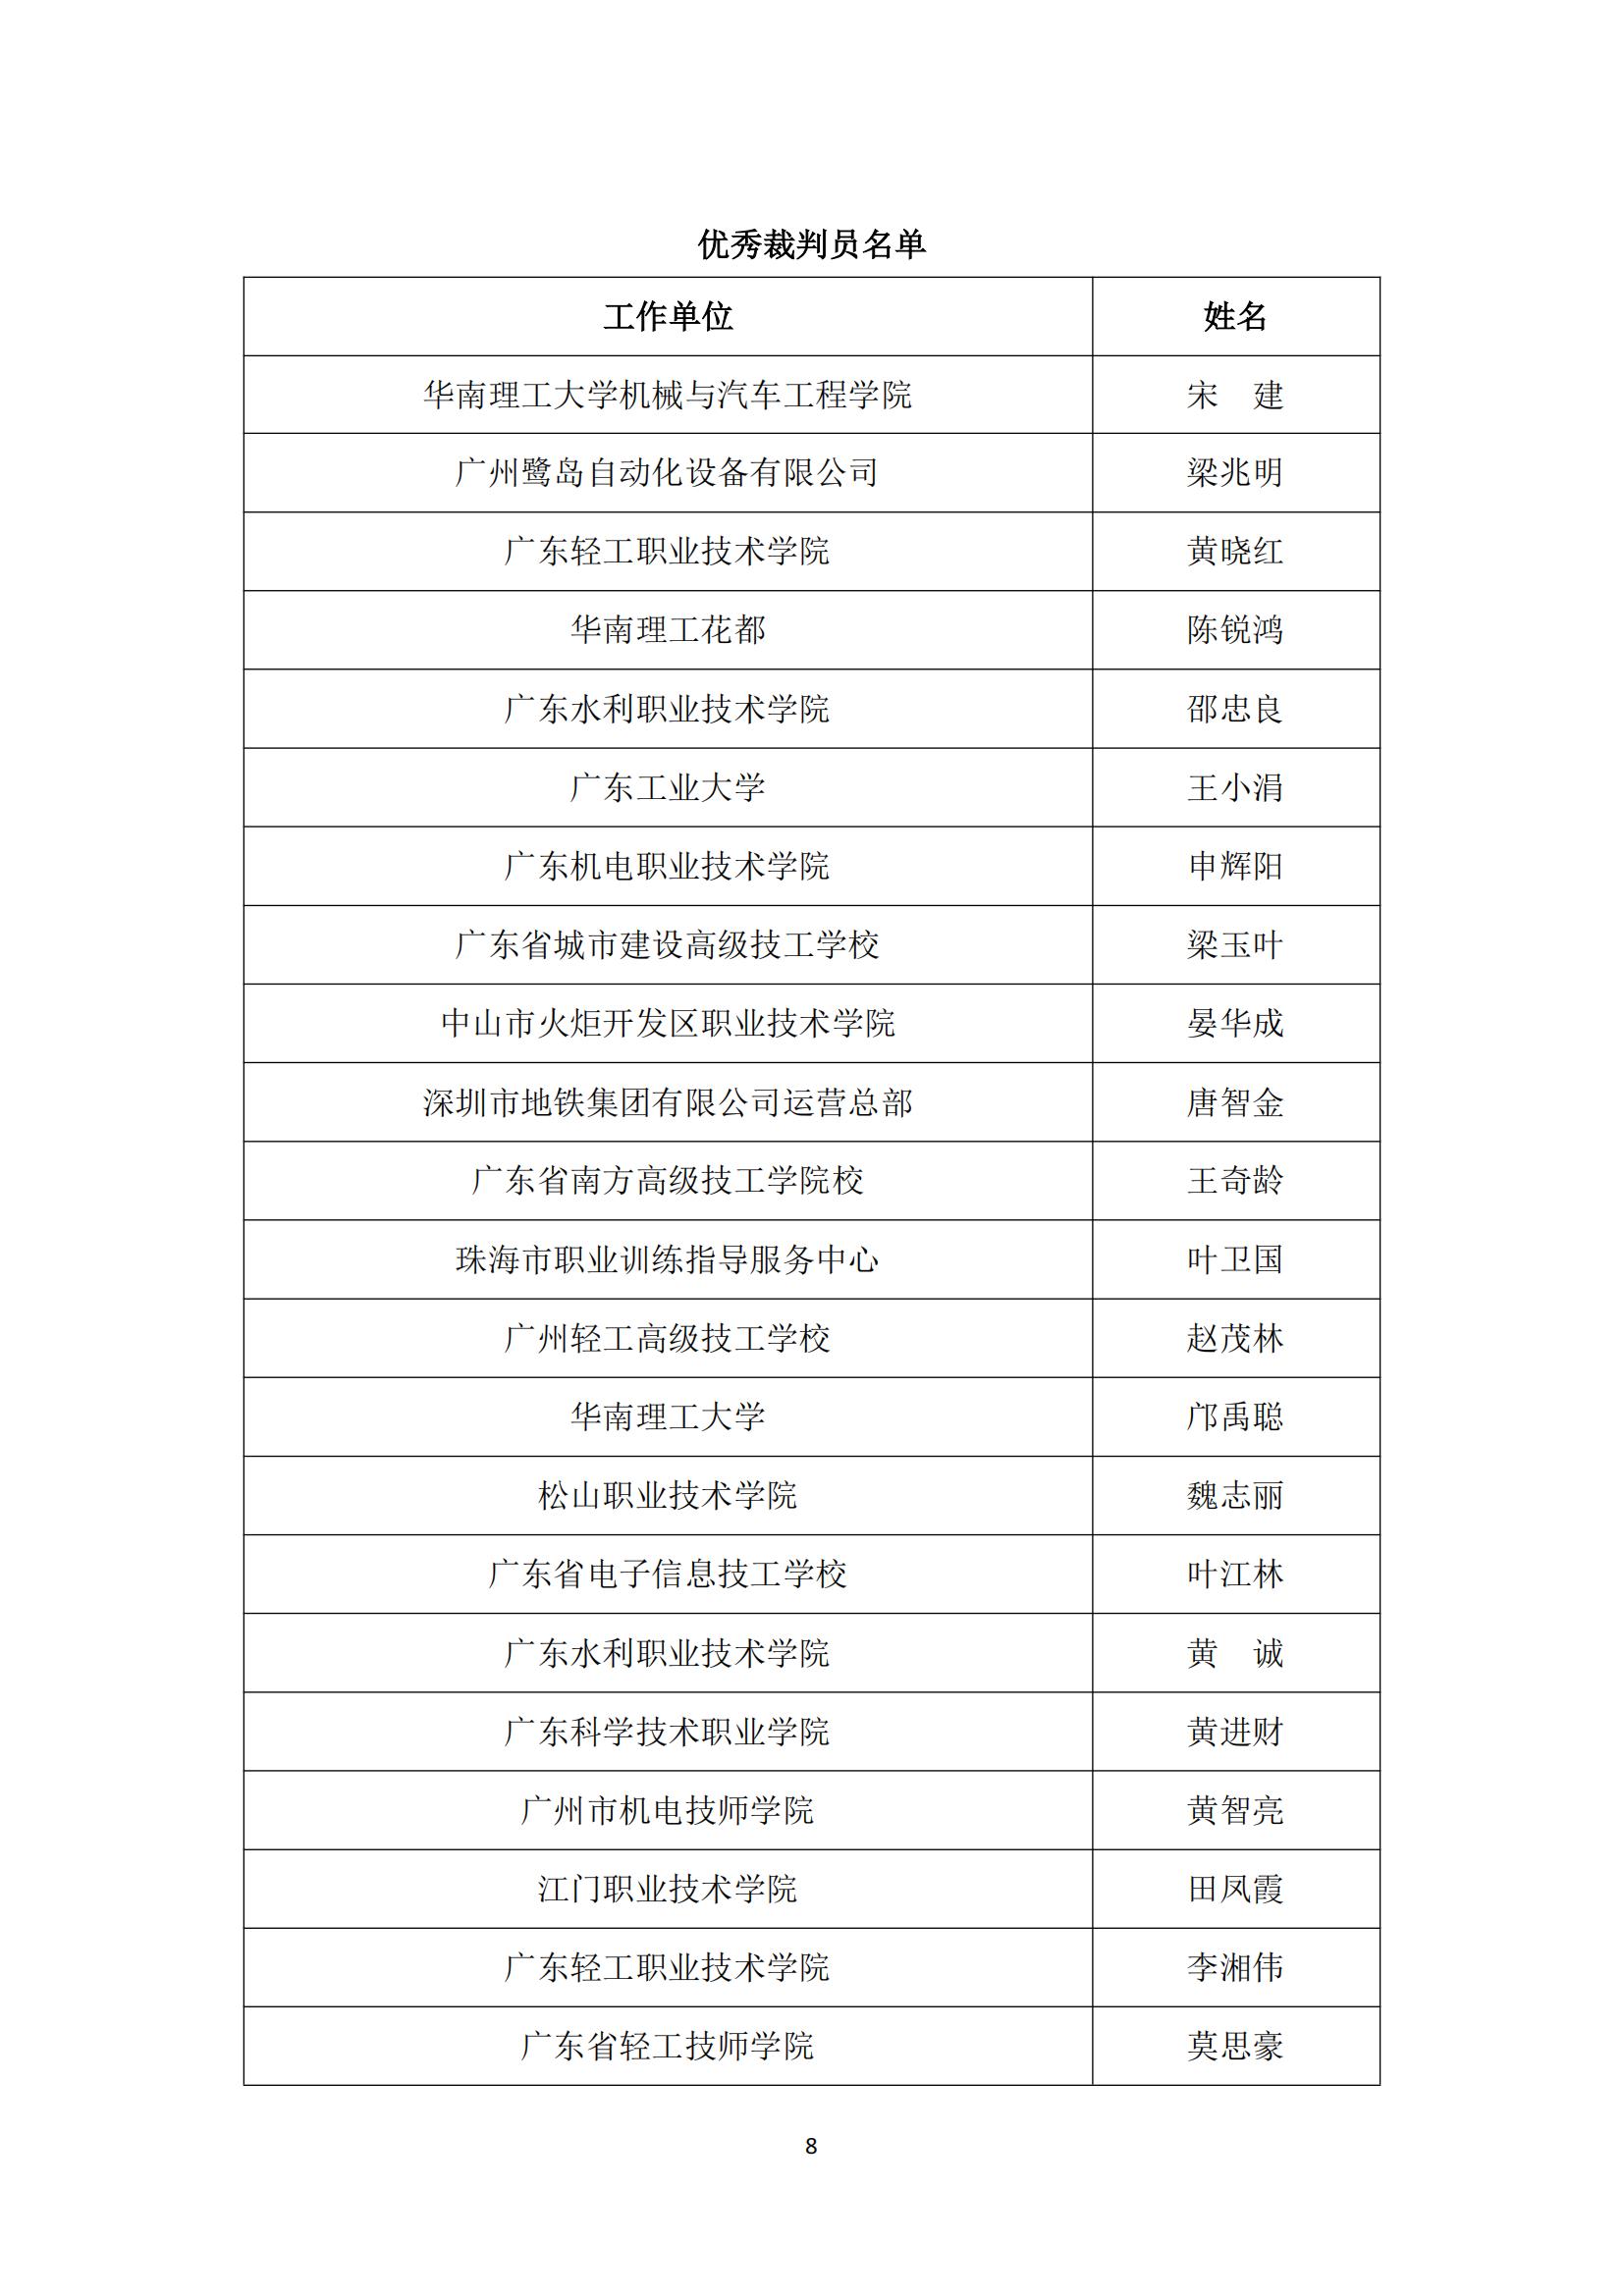 2017 年中国技能大赛——广东省可编程序控制系统设计师（机电一体化）职业技能竞赛_07.jpg